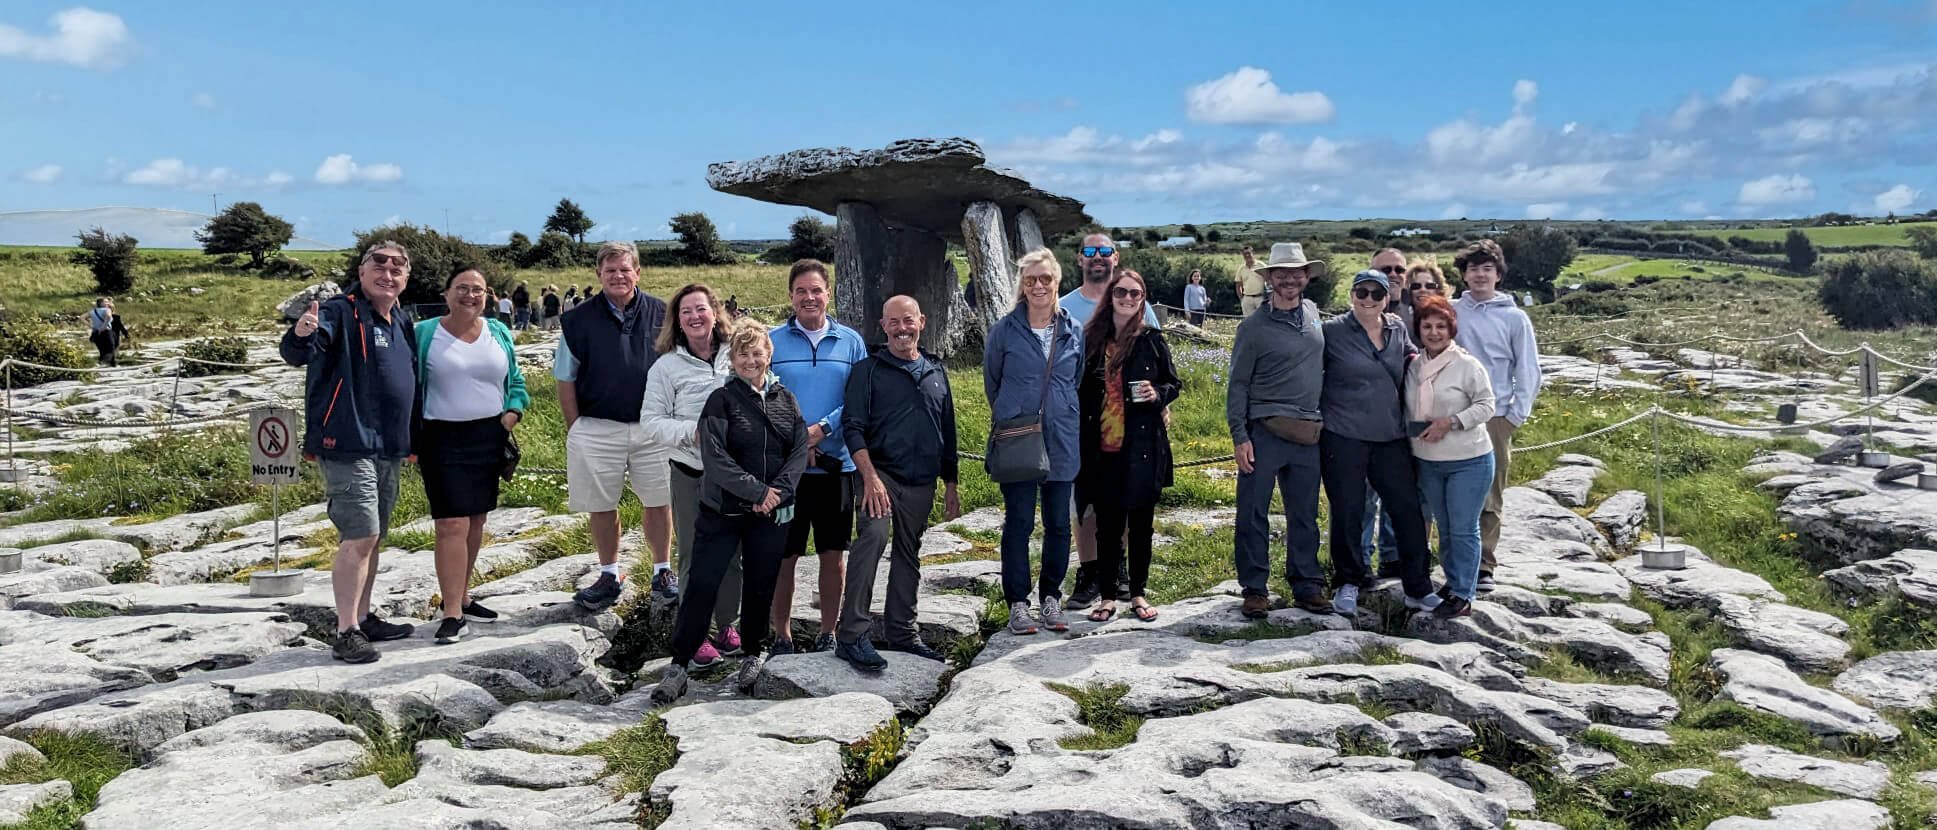 Happy group in The Burren, Ireland